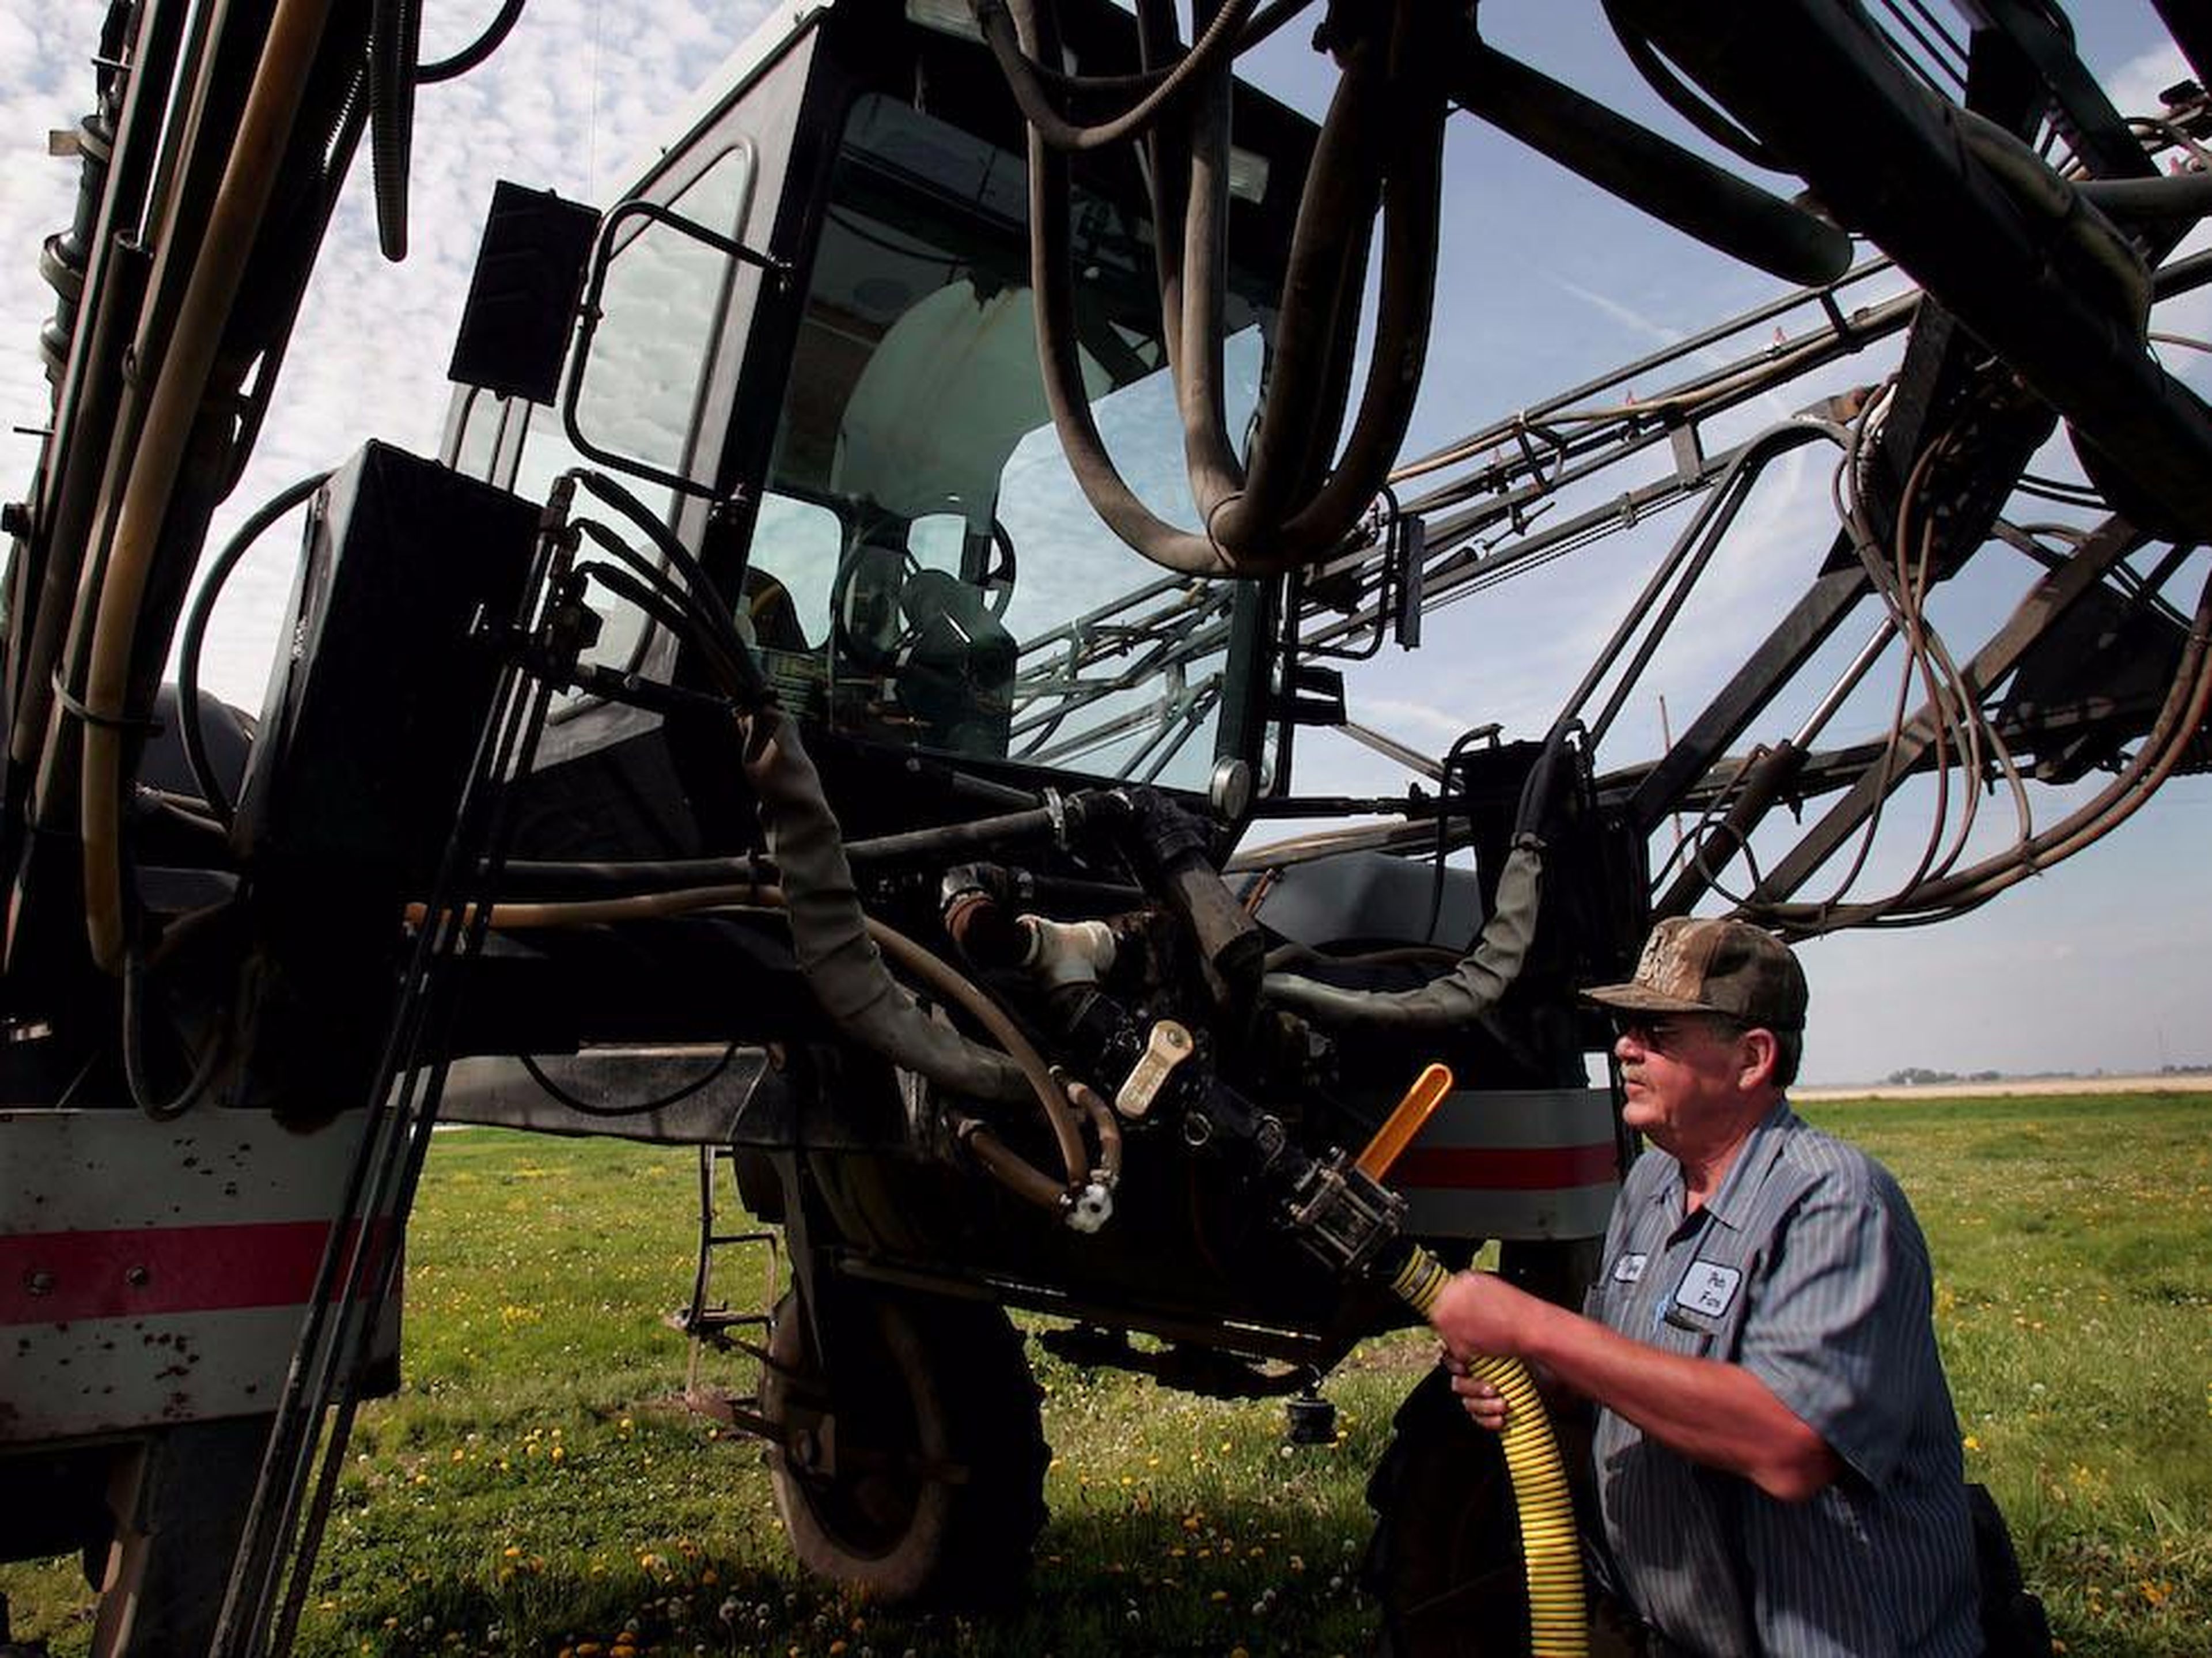 A farmer loads herbicide into a sprayer in Illinois.